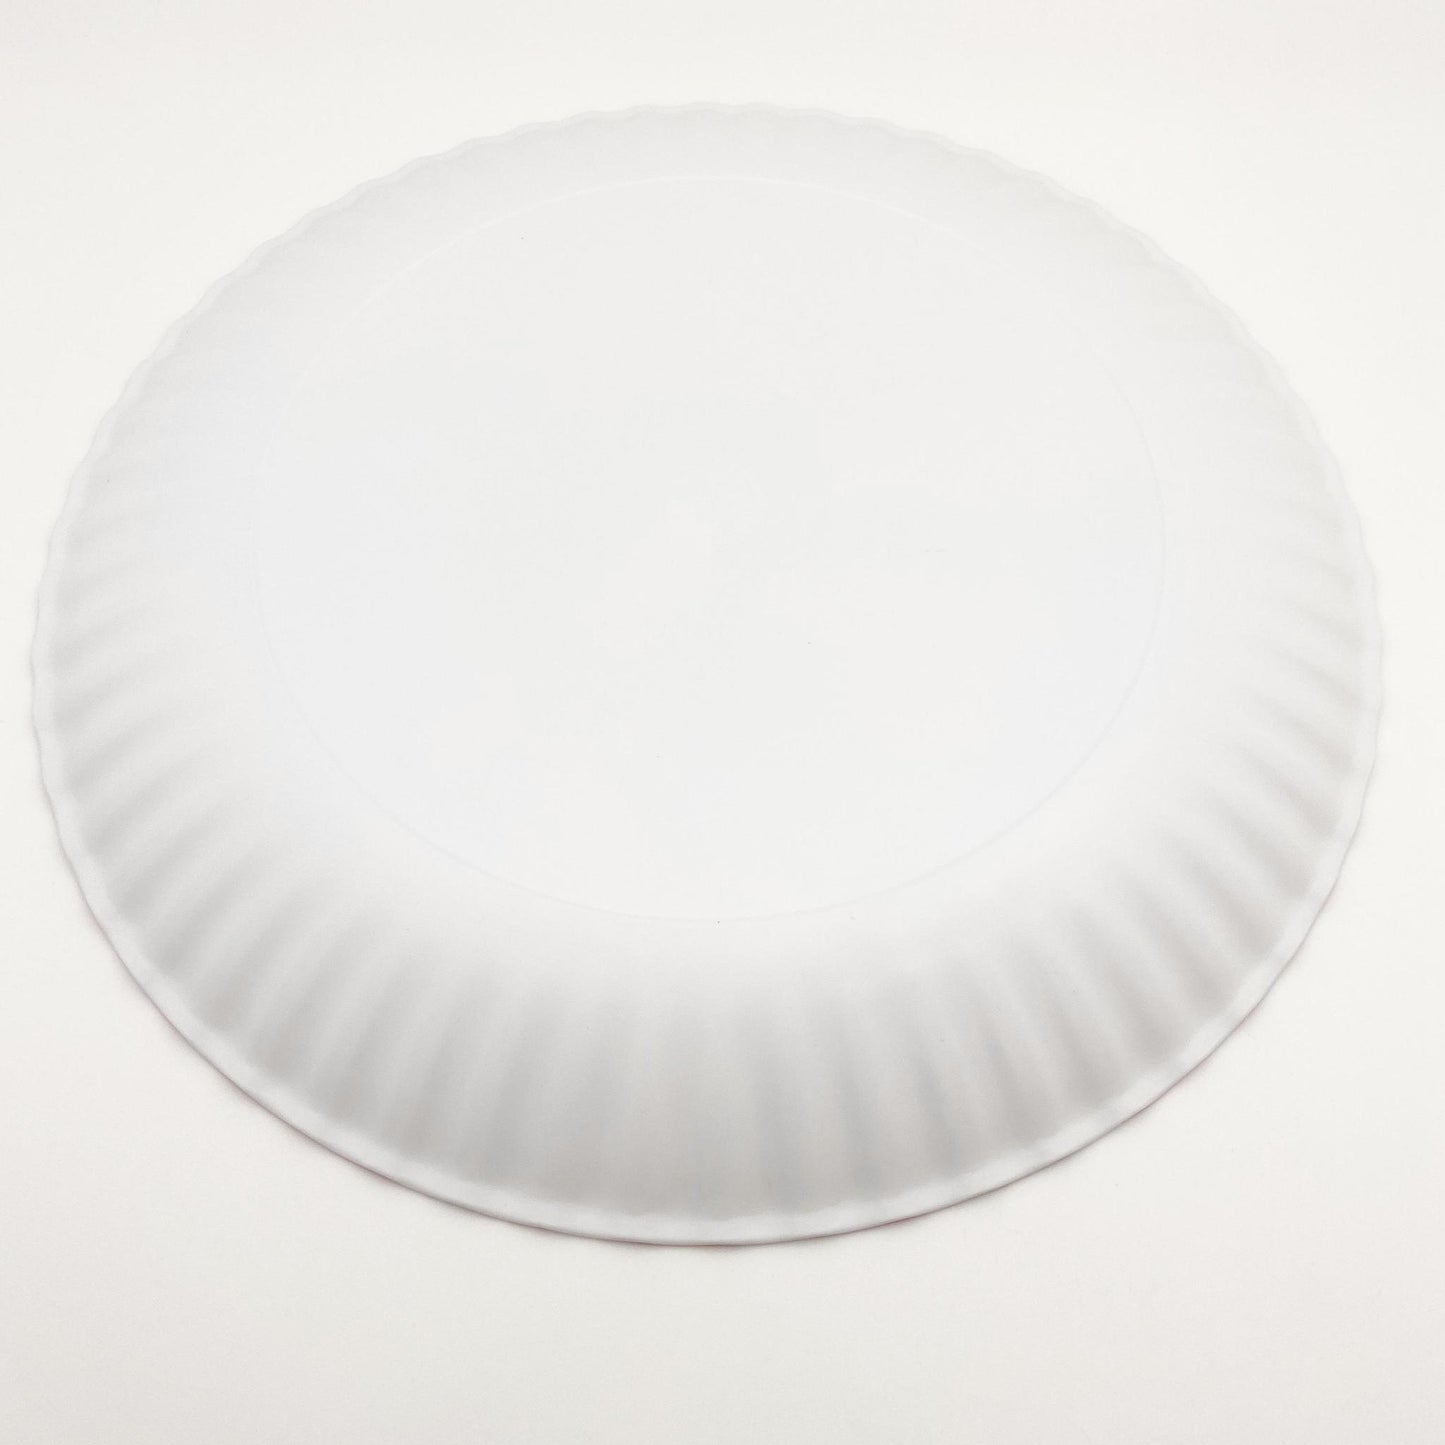 Platter - Picnic - Melamine "Paper Plate"